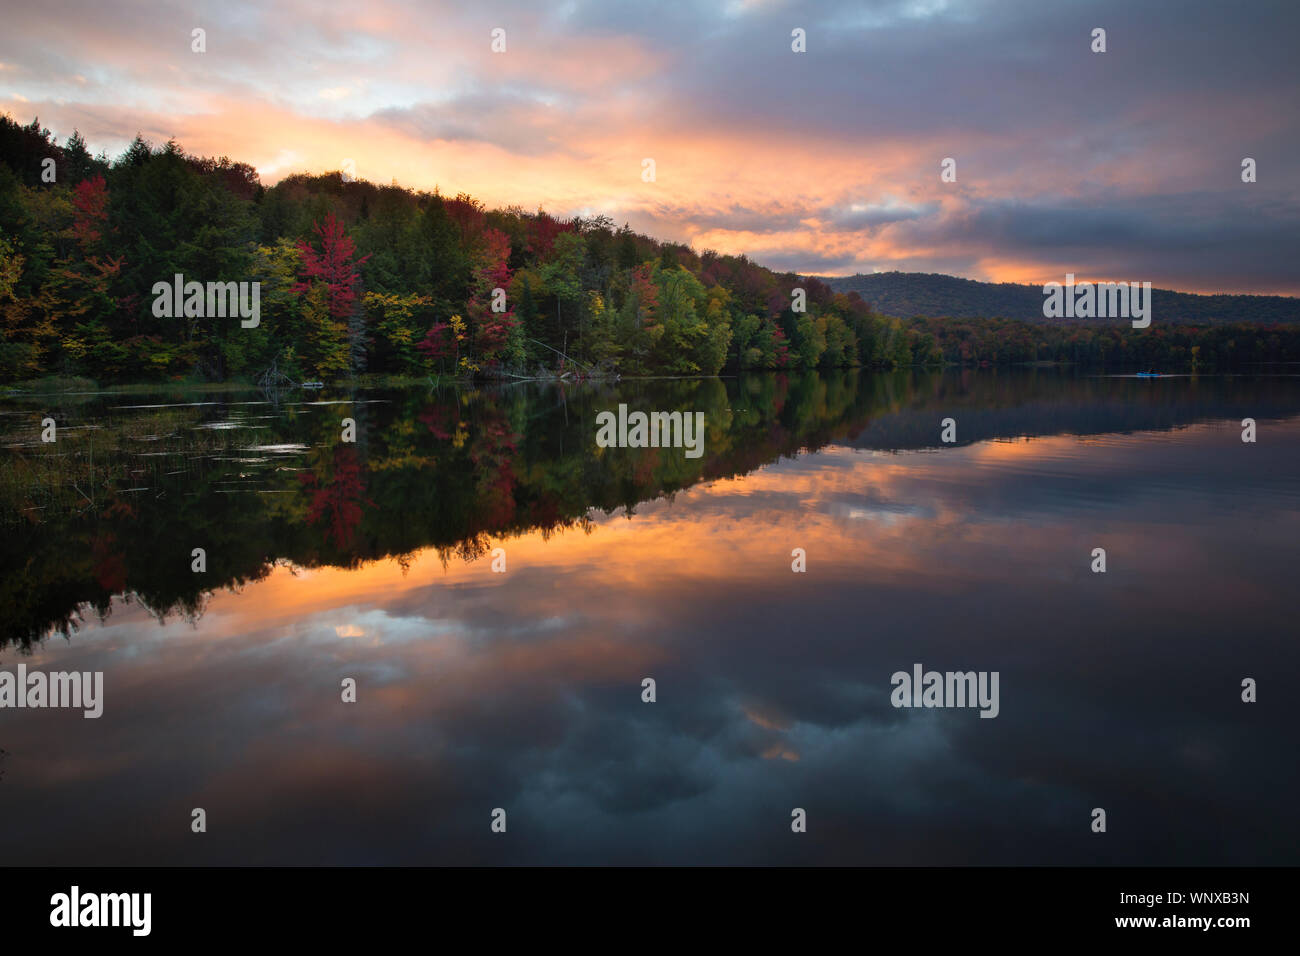 Bunte sunrise in ruhigen Gewässern der Teiche in Vermont und New York. Leaf peeping Antriebe bringen Sie hinter diese atemberaubende Szenen fällt. Stockfoto